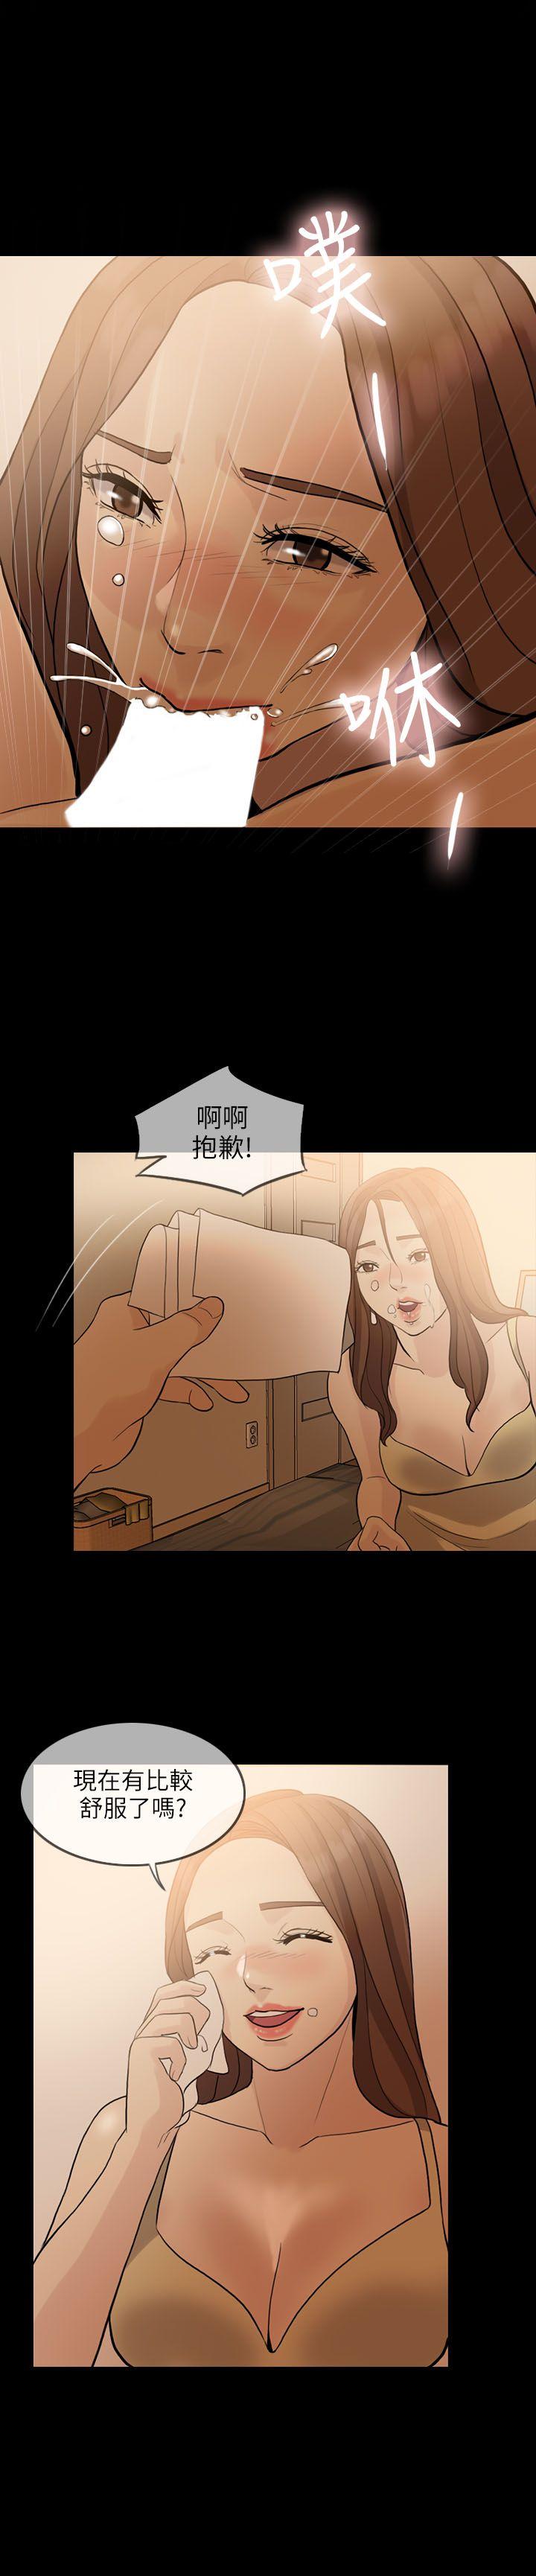 韩国污漫画 失控的愛 第2话 20